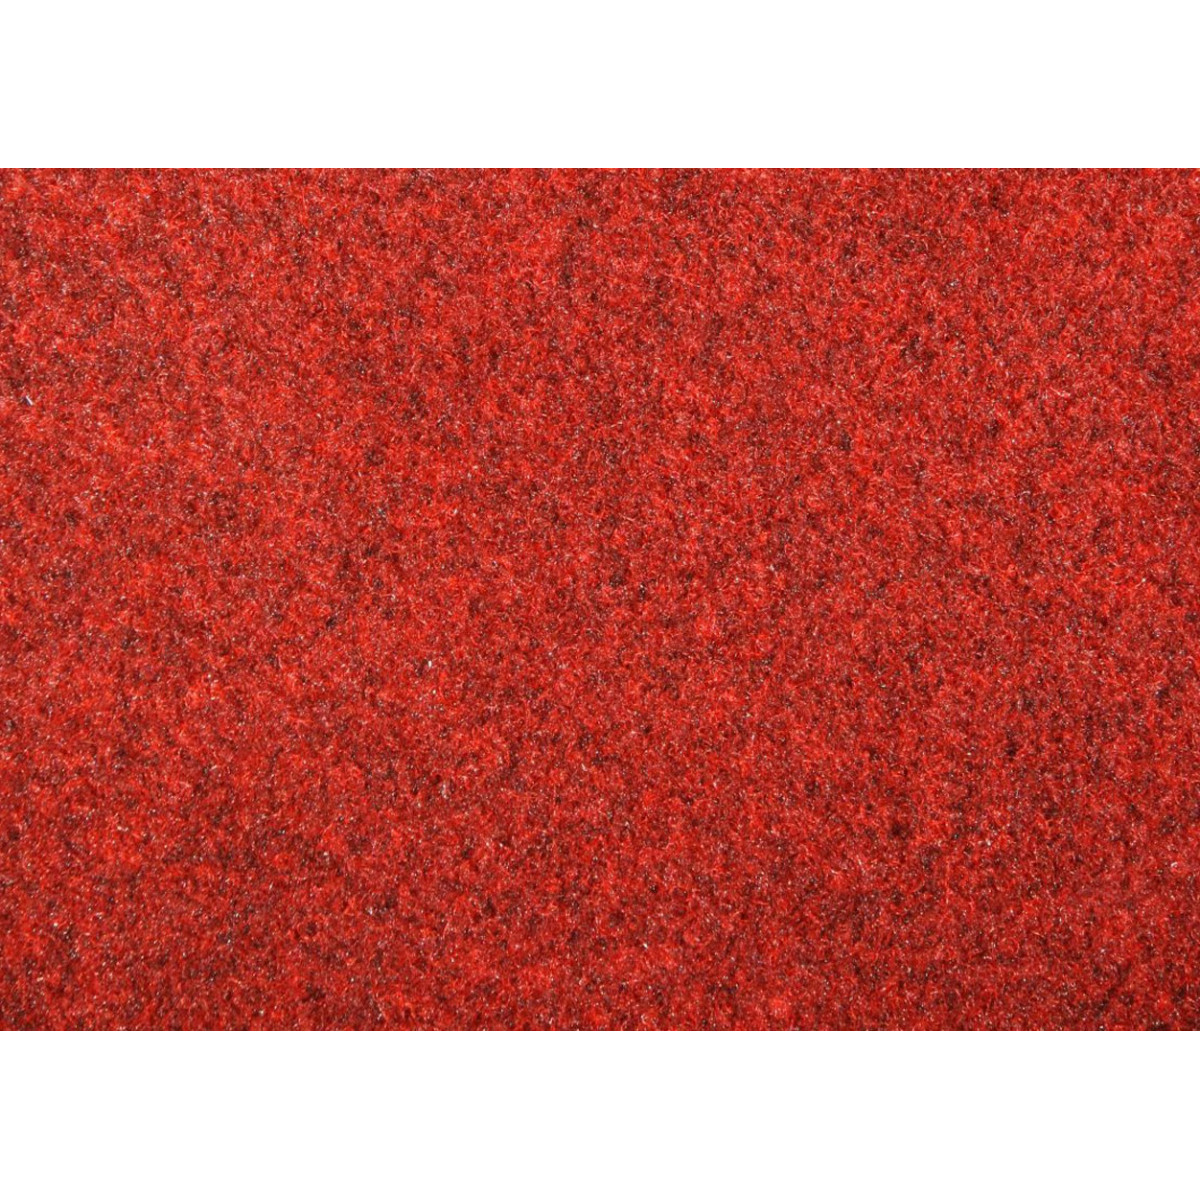 Metrážový koberec New Orleans 353 s podkladem resine, zátěžový